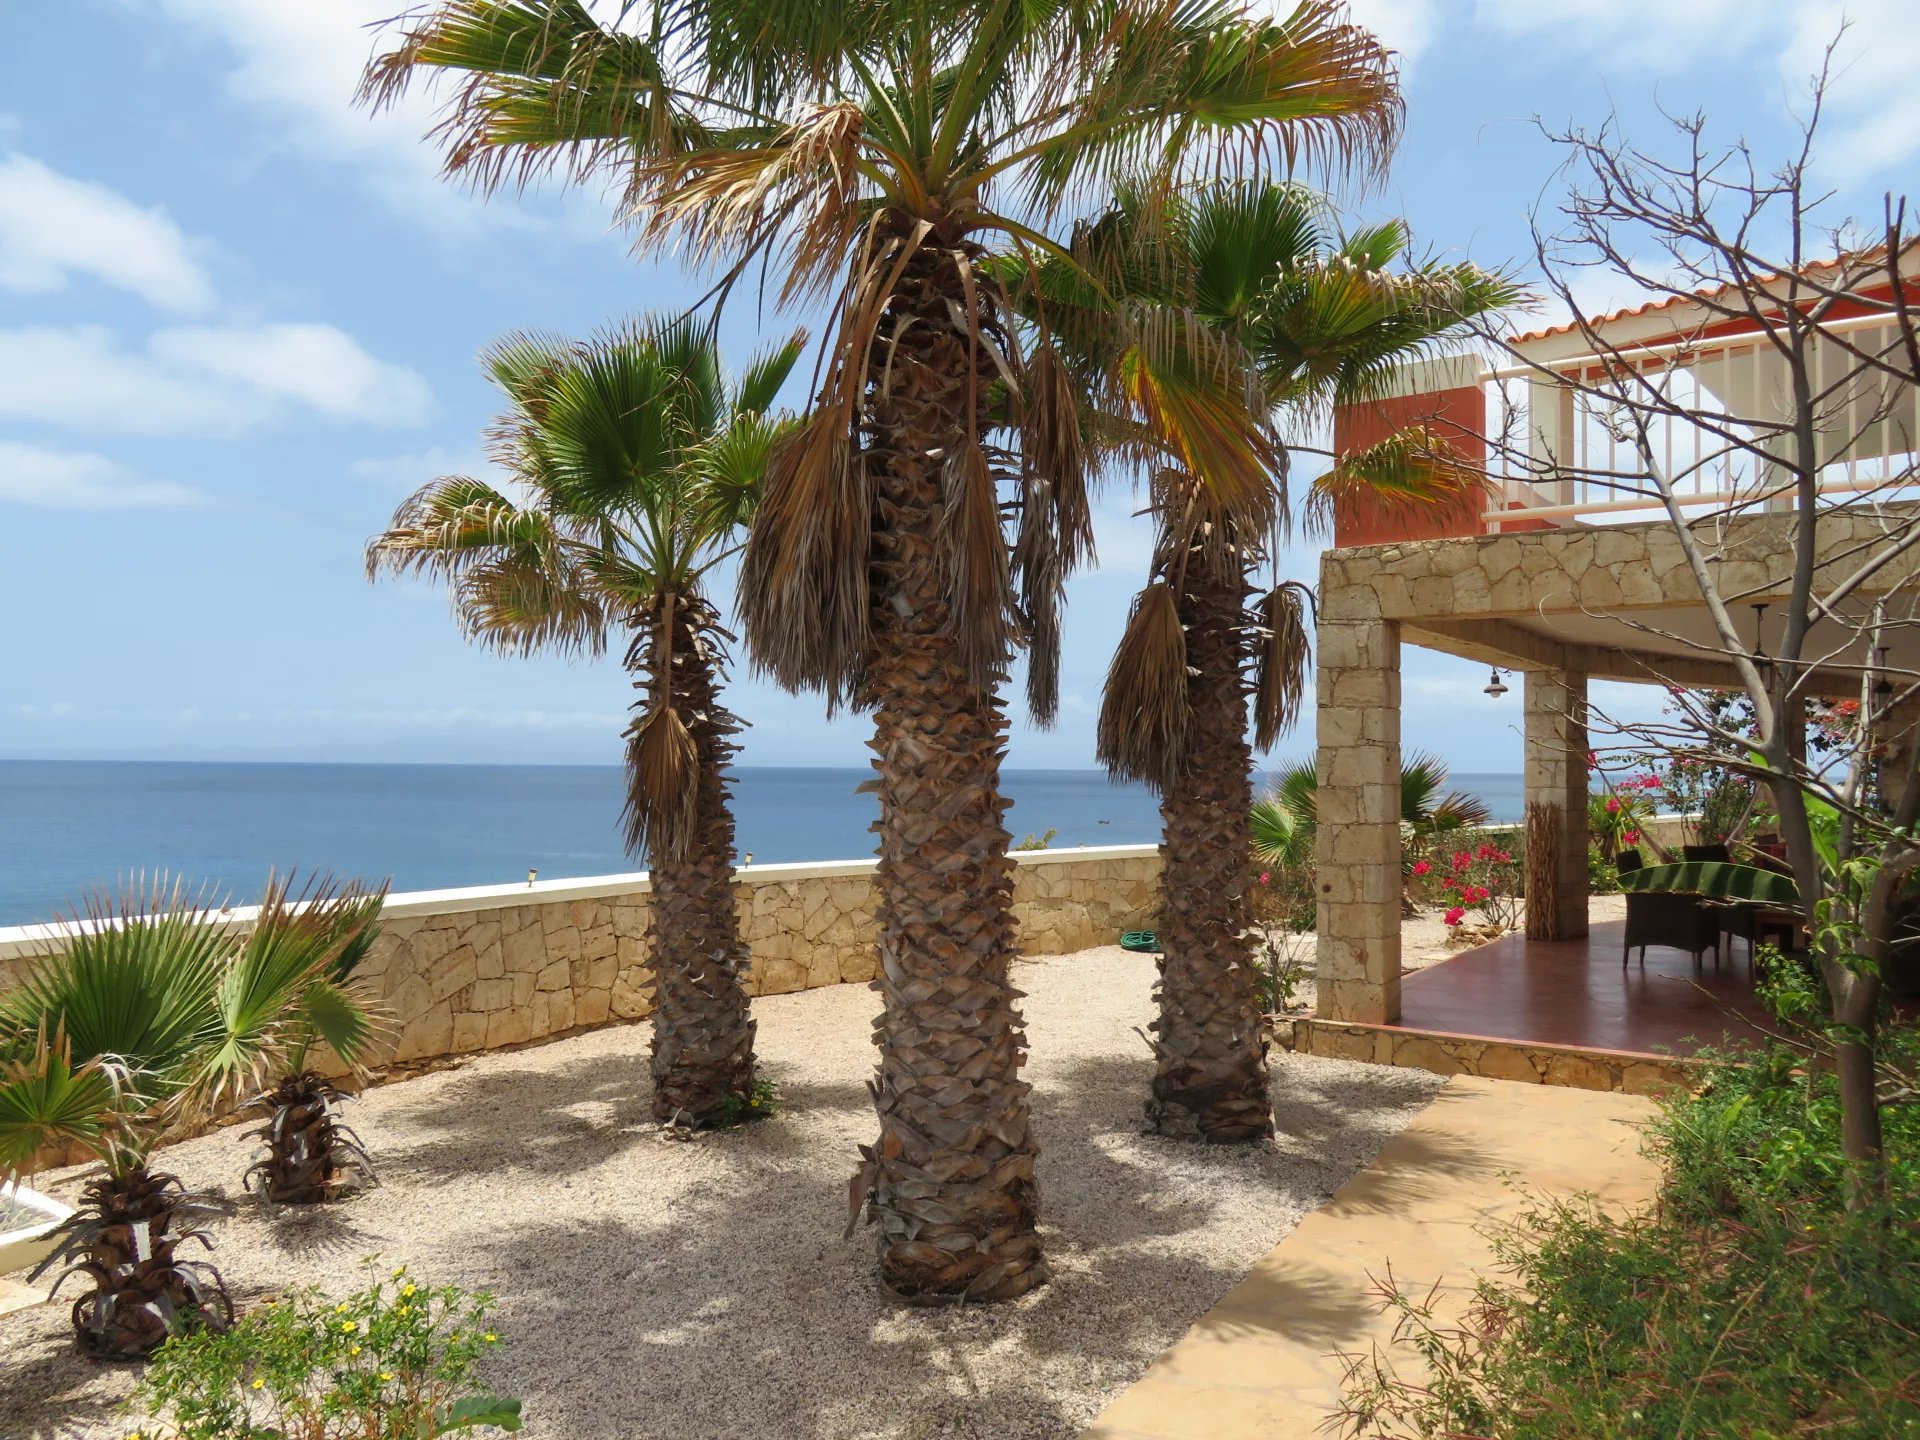 Maison d'hôtes à Vendre sur l'île de Maio - Cap Vert.